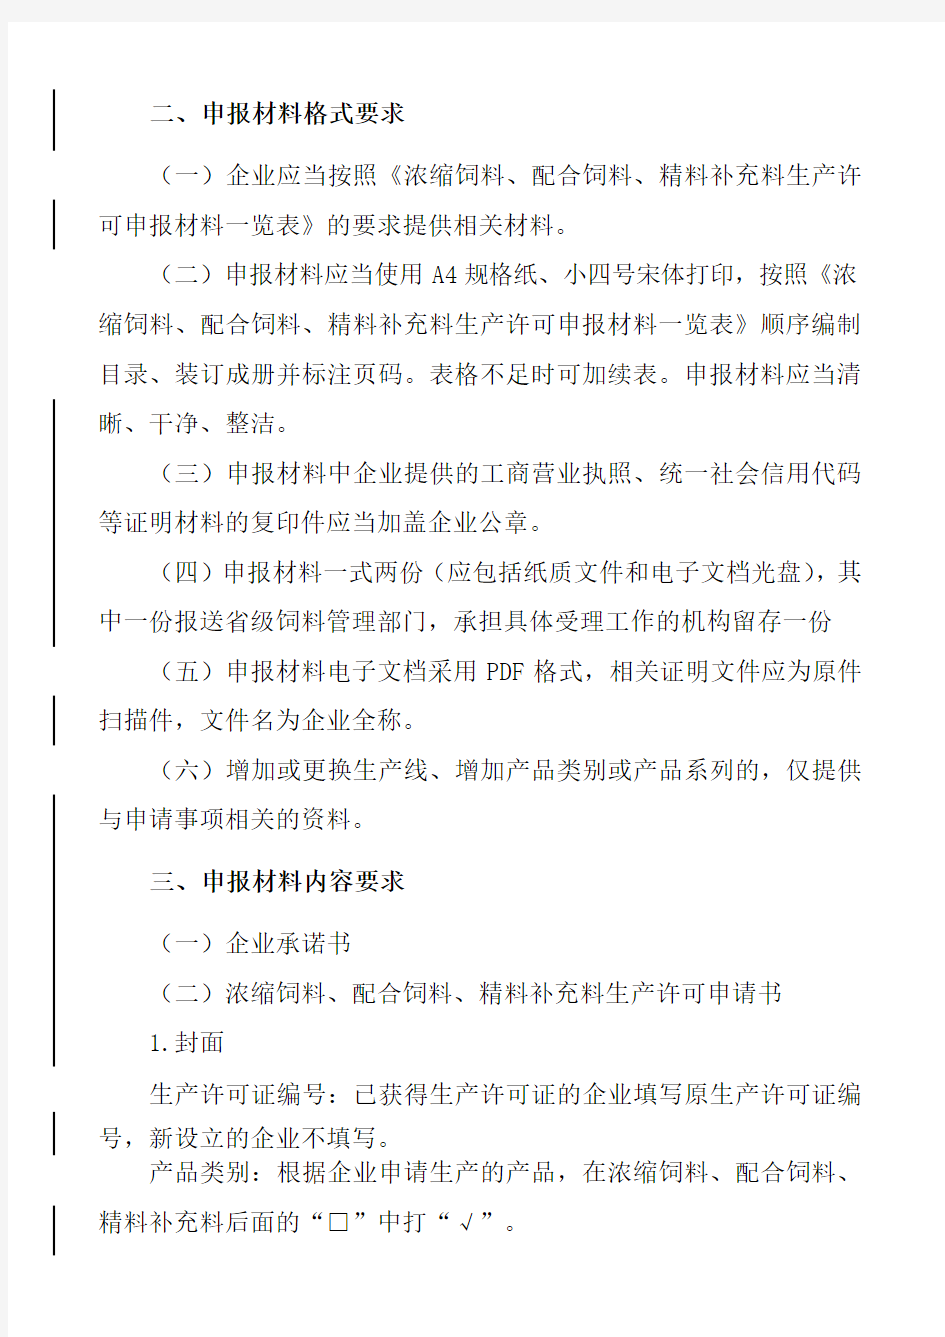 中华人民共和国农业部公告第浓缩配合精料补充料生产许可申报材料要求